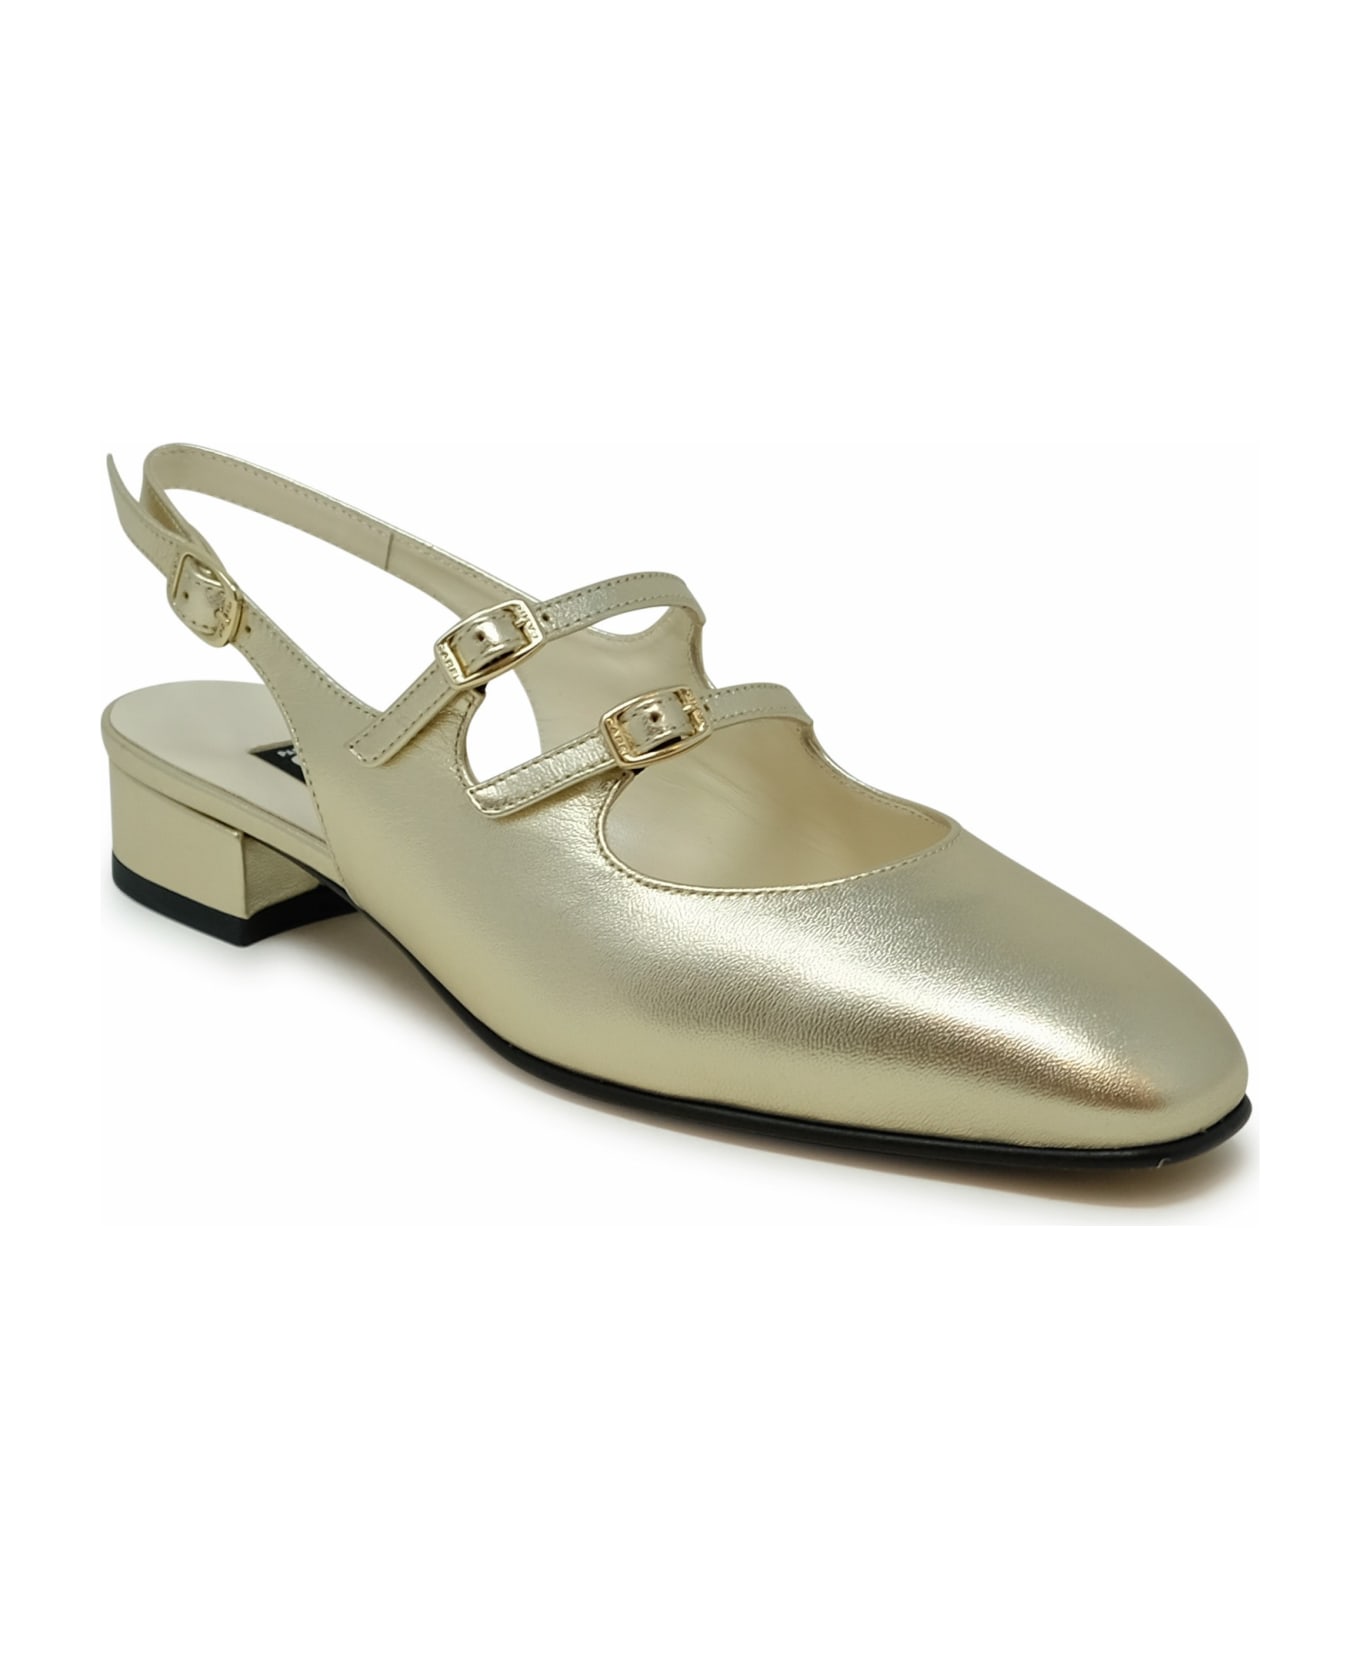 Carel Paris Gold Leather Ballet Flats - GOLD